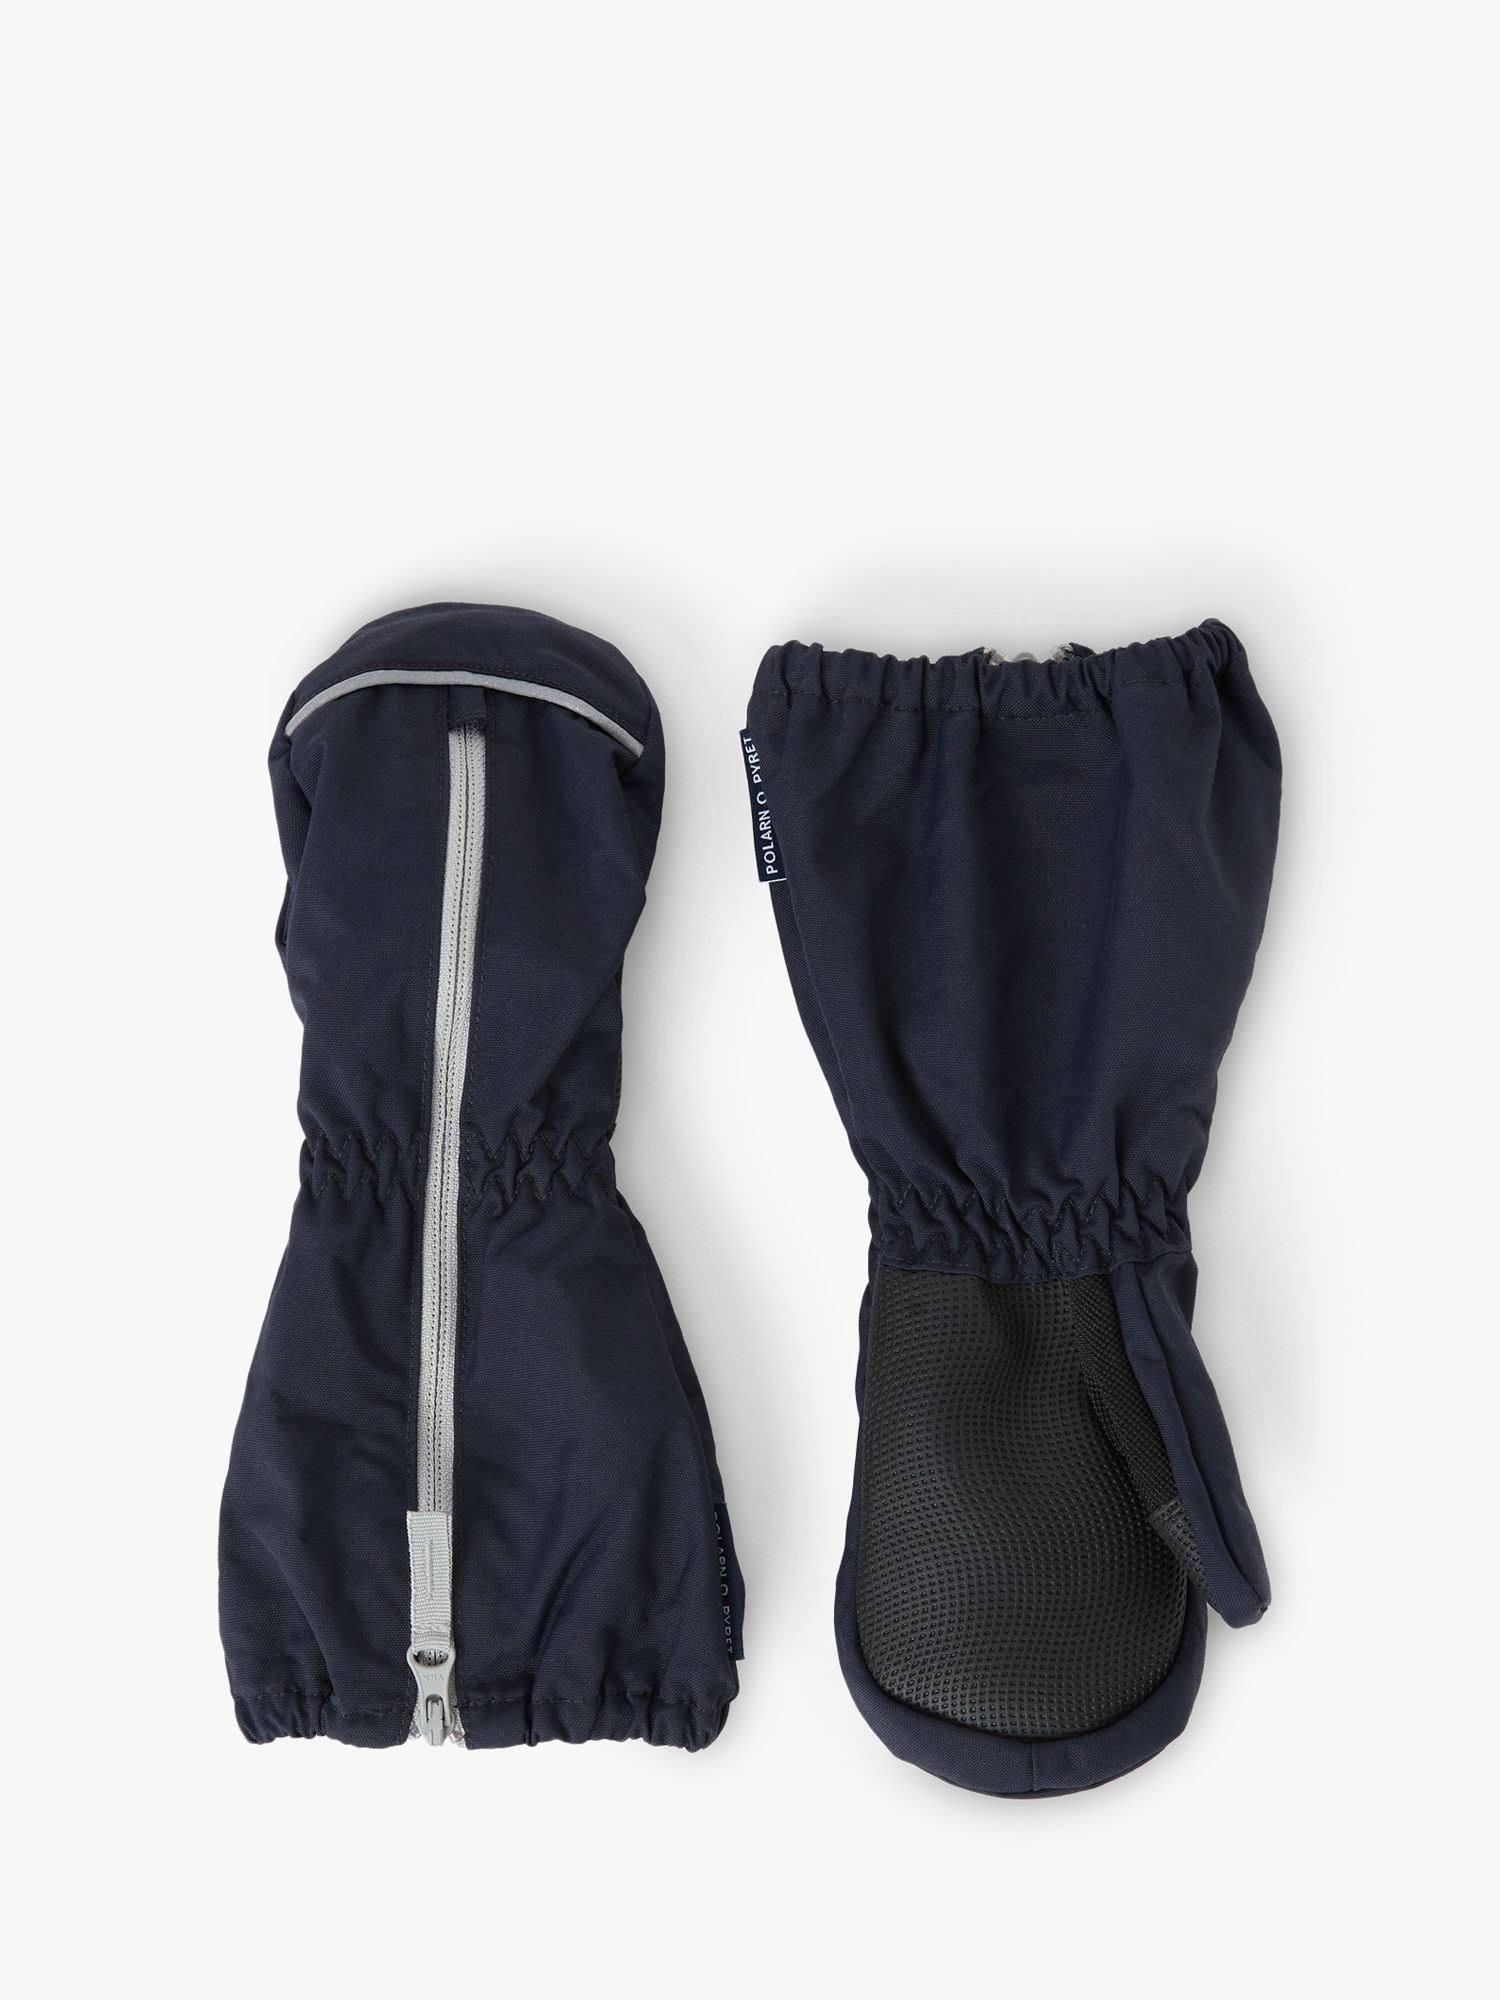 Buy Polarn O. Pyret Kids' Gloves, Blue Online at johnlewis.com